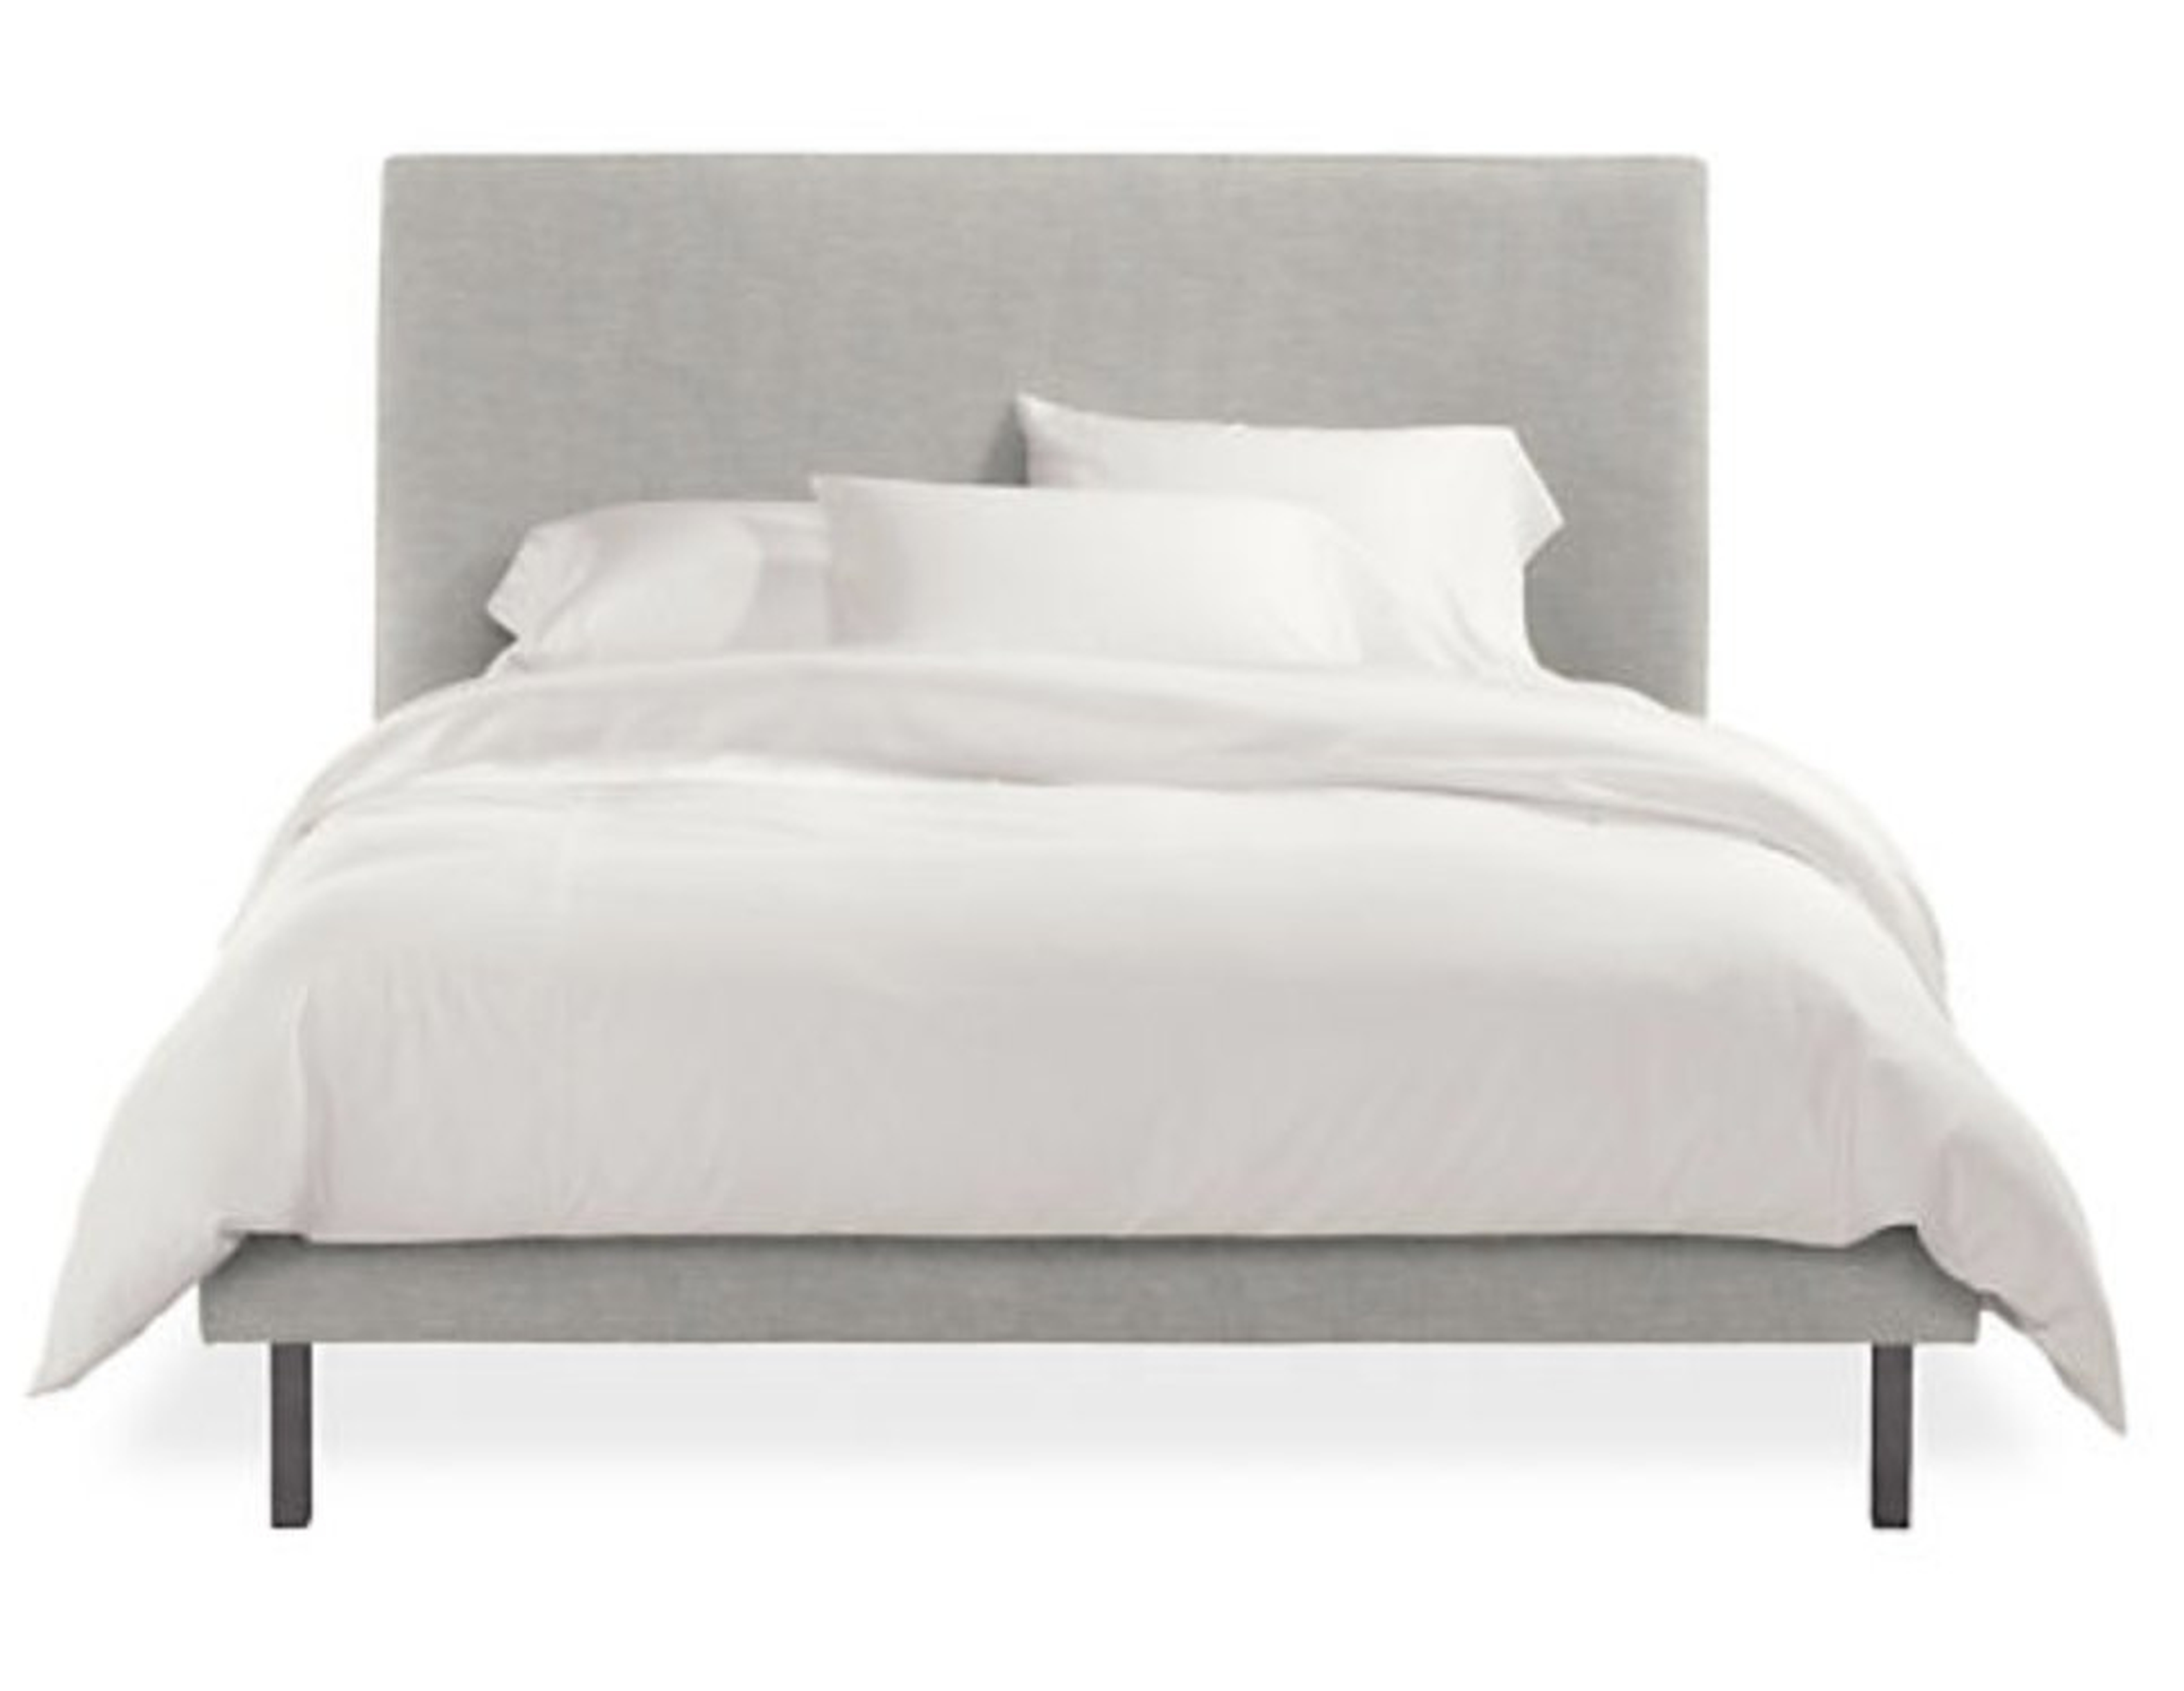 Ella Queen Bed in Destin Grey Fabric - Room & Board